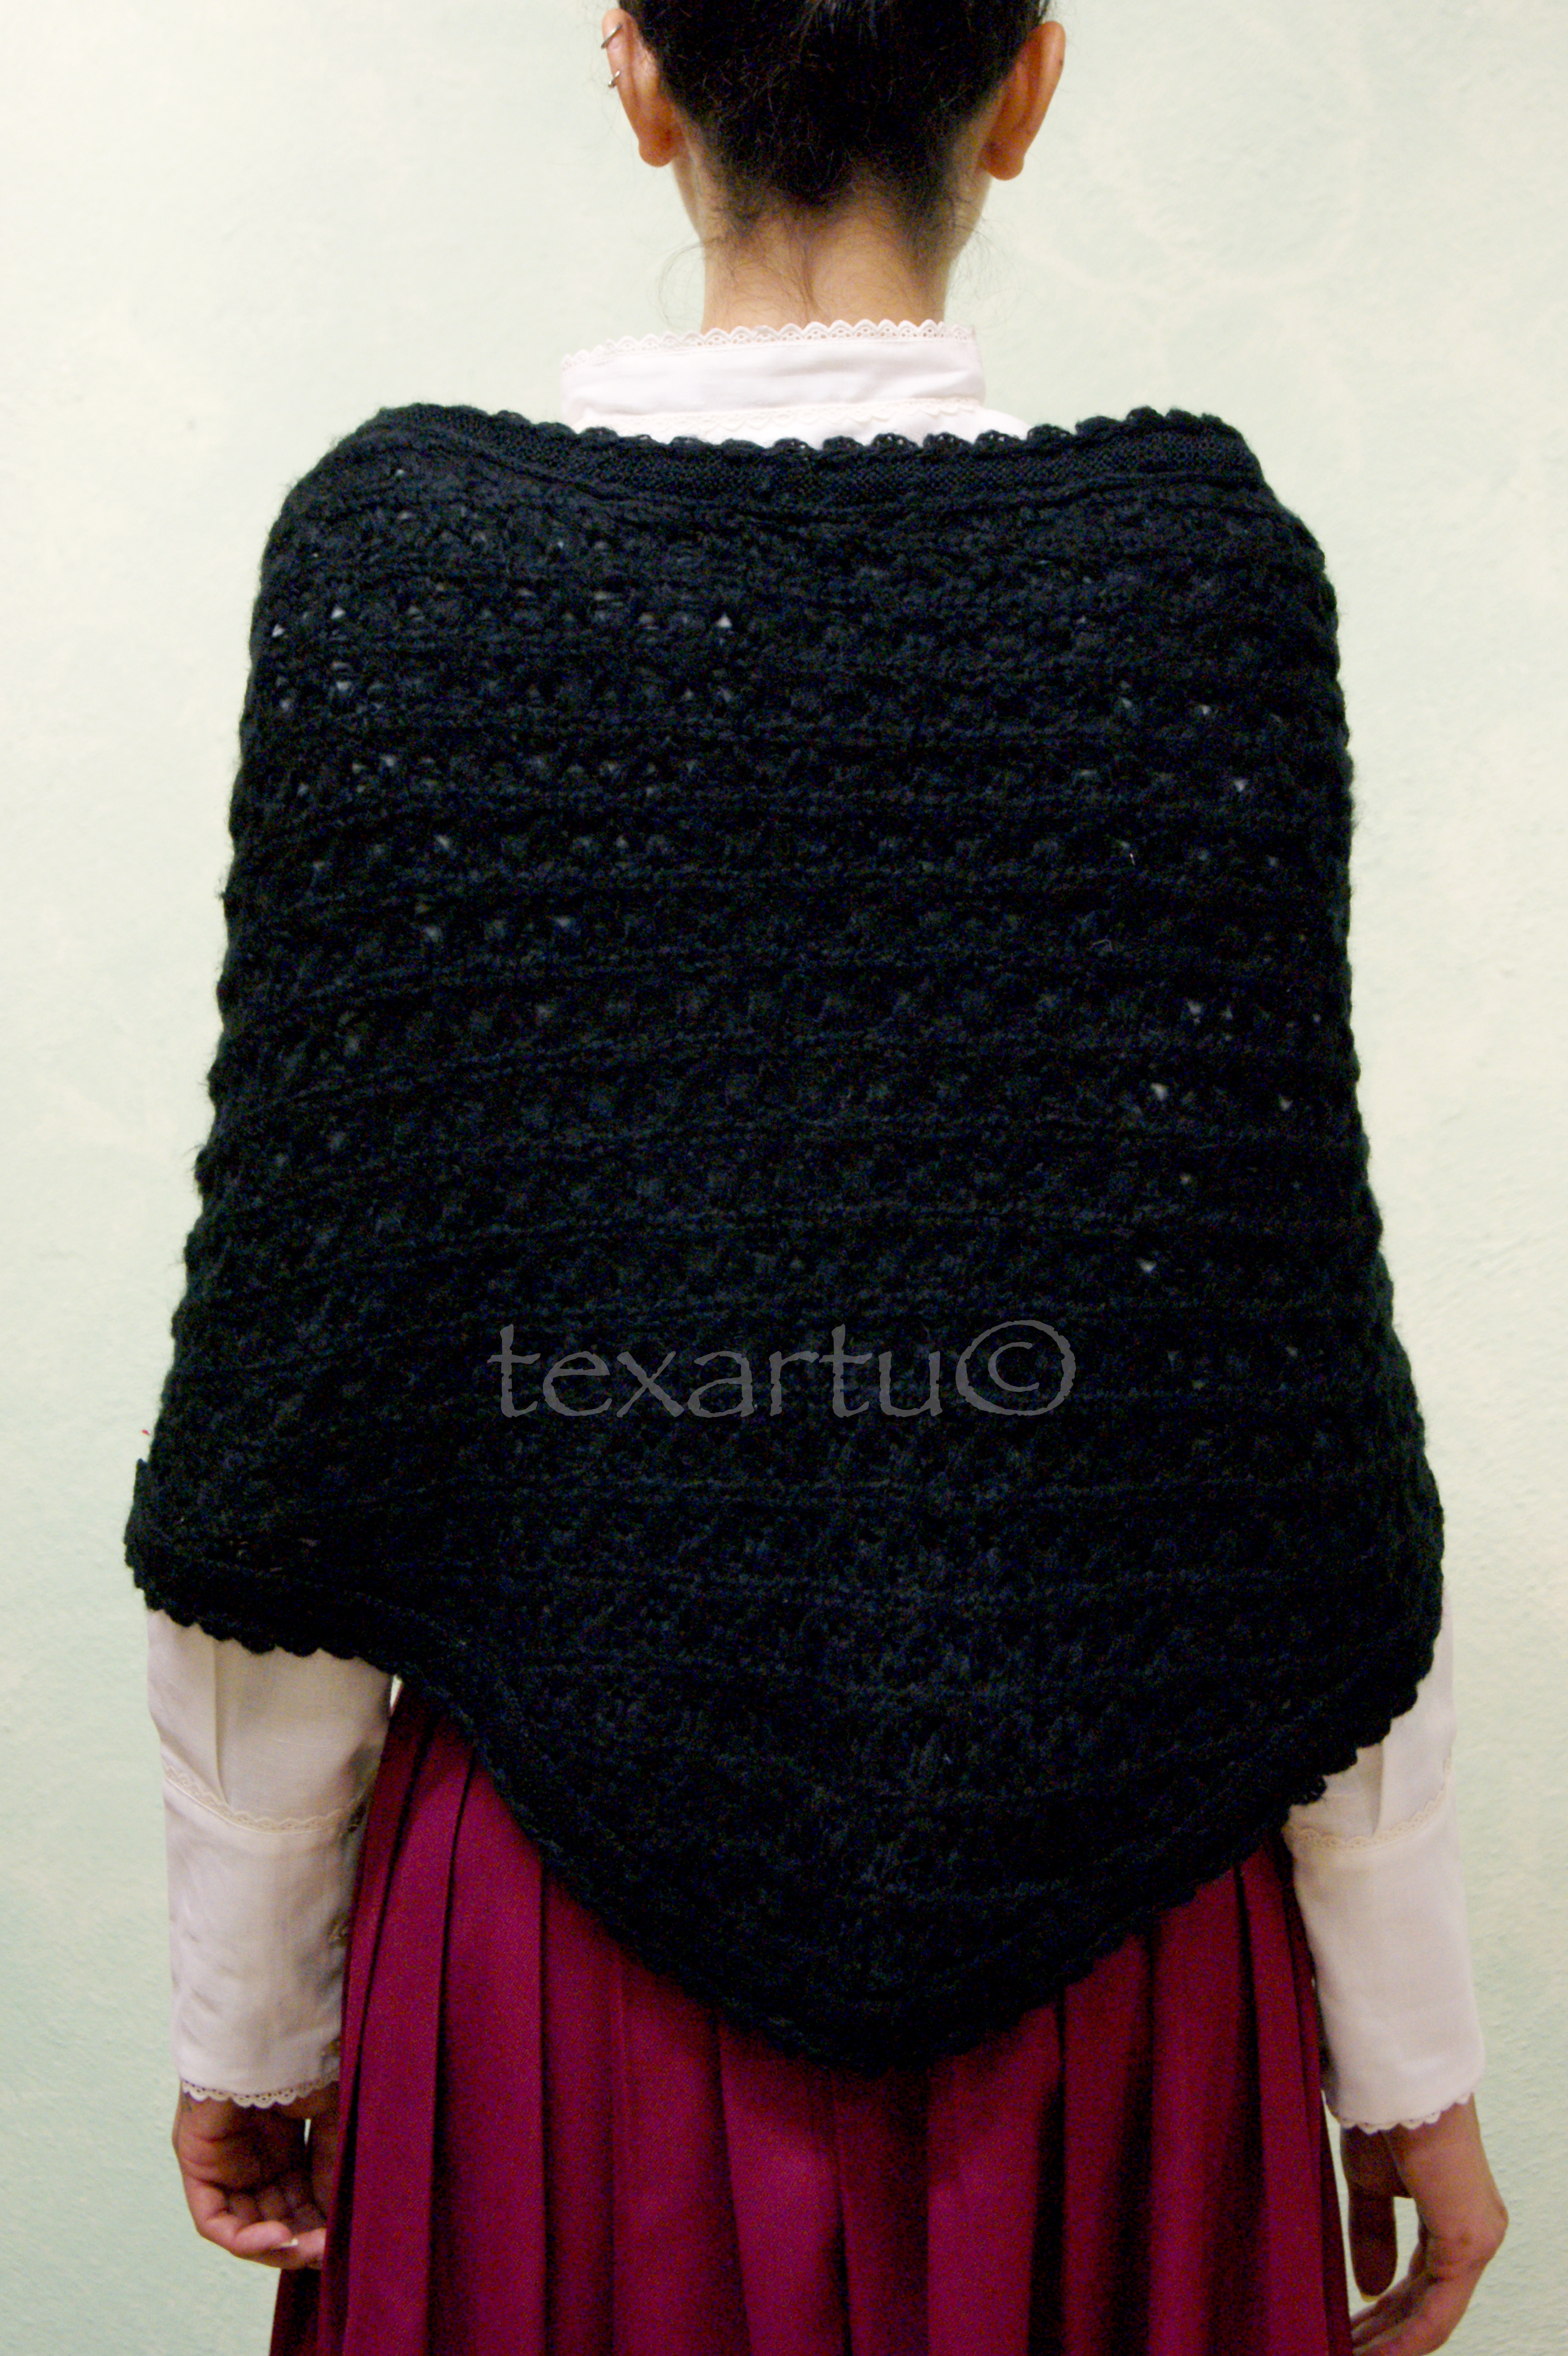 Toquilla modelo Atiarno – Texartu Estudio Textil